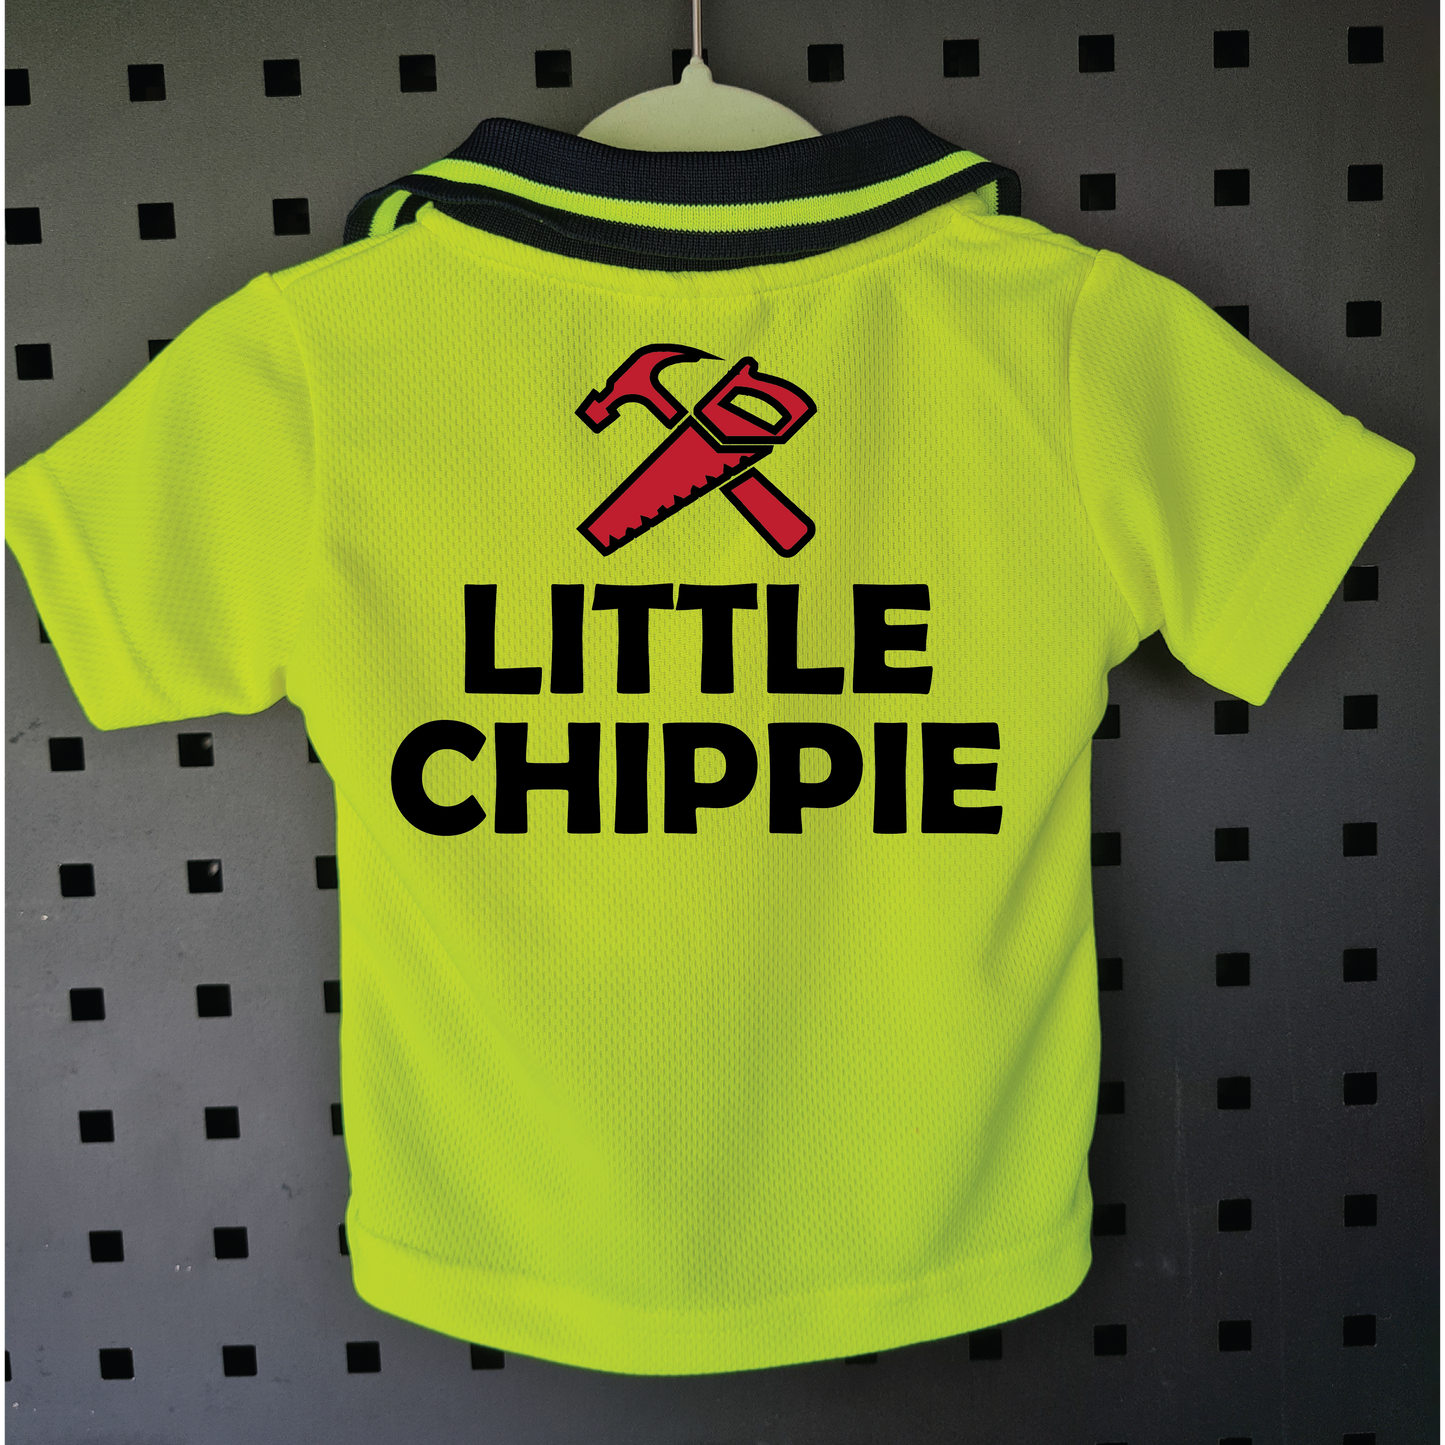 Little Chippie